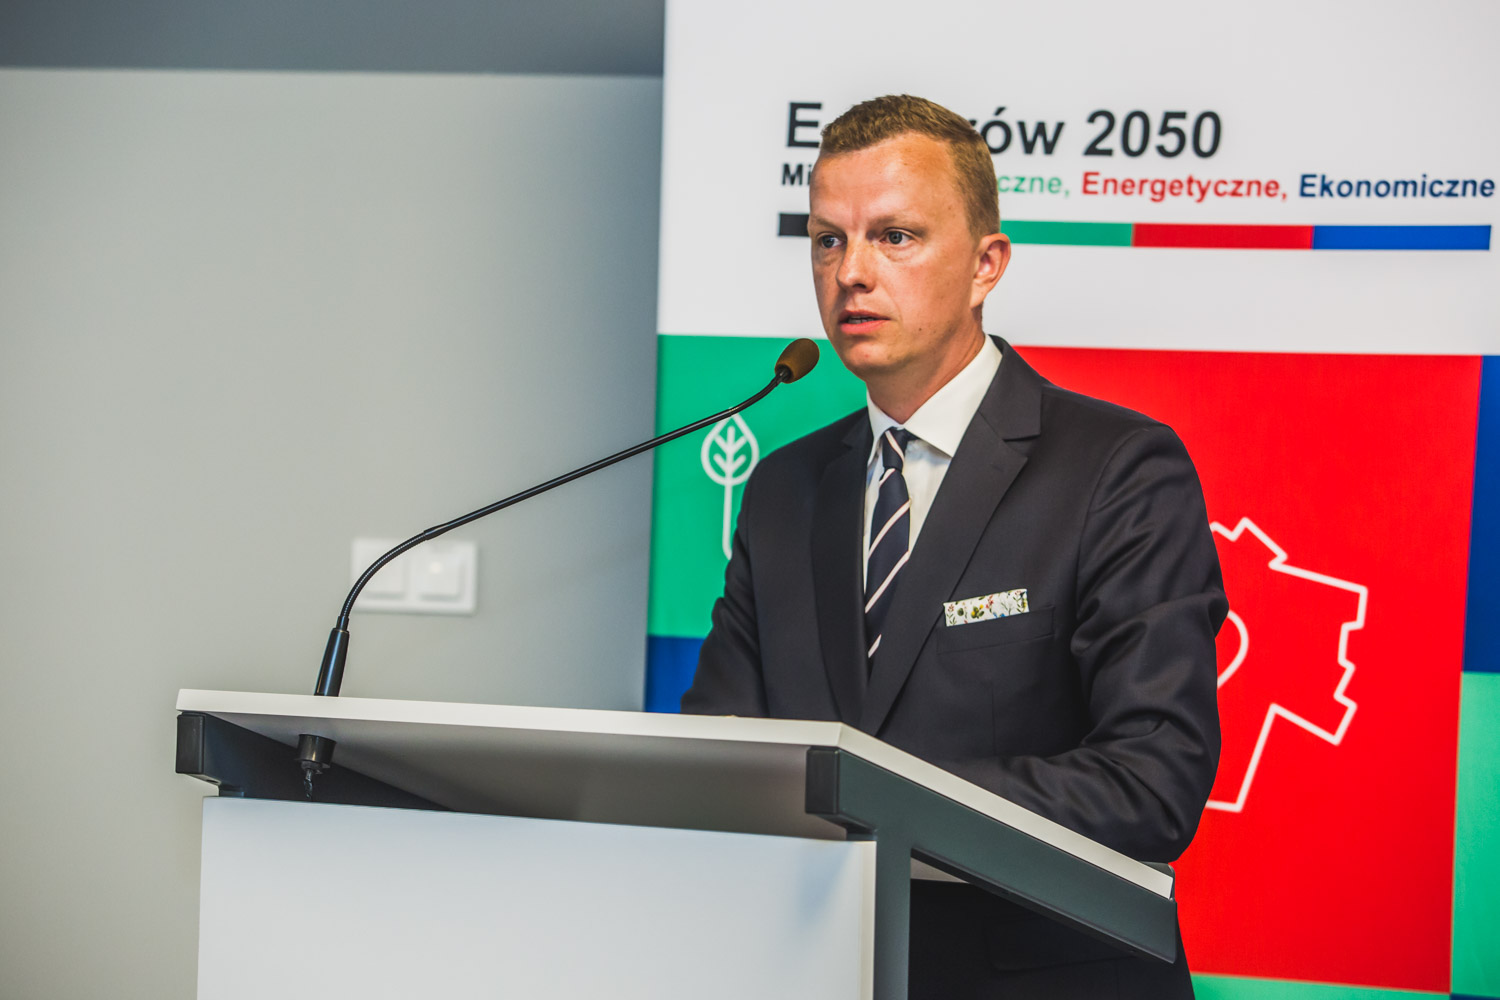 Conference opening the project "E-Ostrów 2050 – Ecological, Energy and Economic City". The photo shows Mikołaj Kostka, Deputy Mayor of Ostrów Wielkopolski.